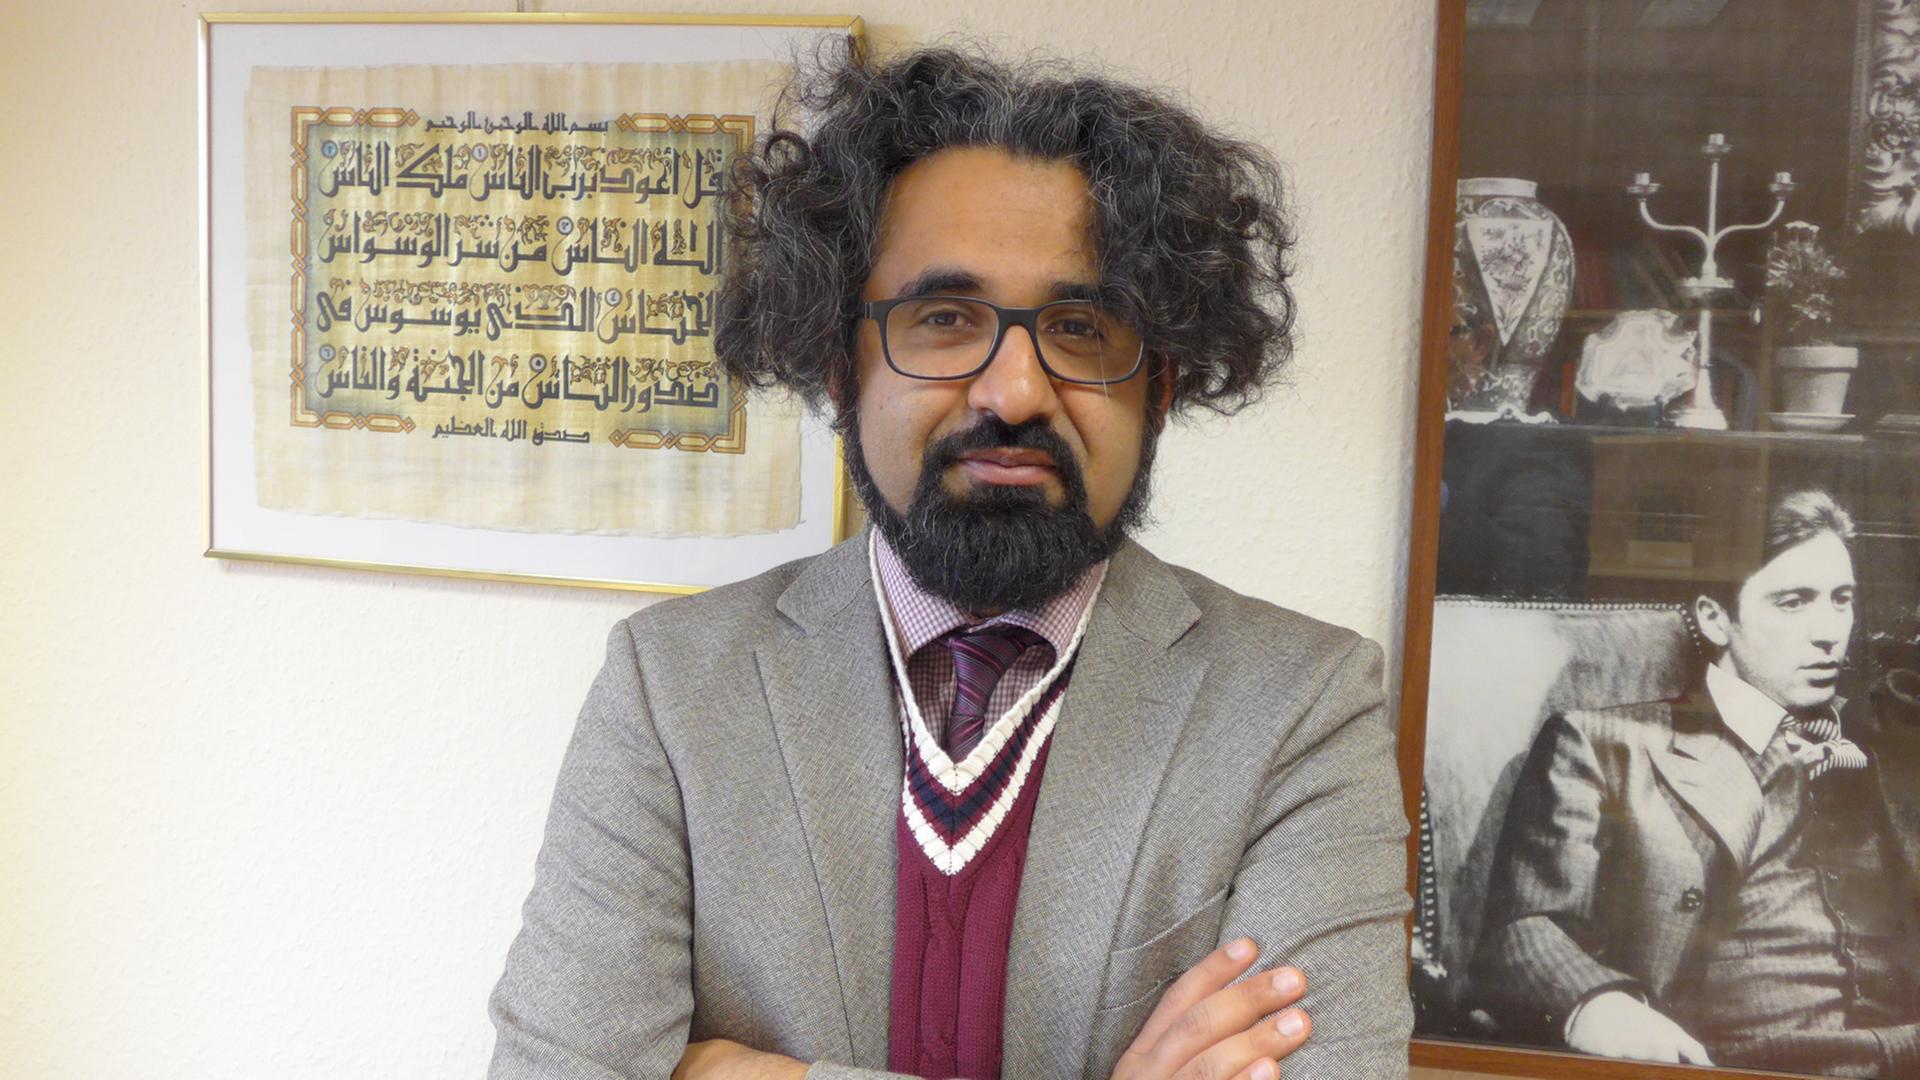 Der Religionswissenschaftler Ahmad Milad Karimi